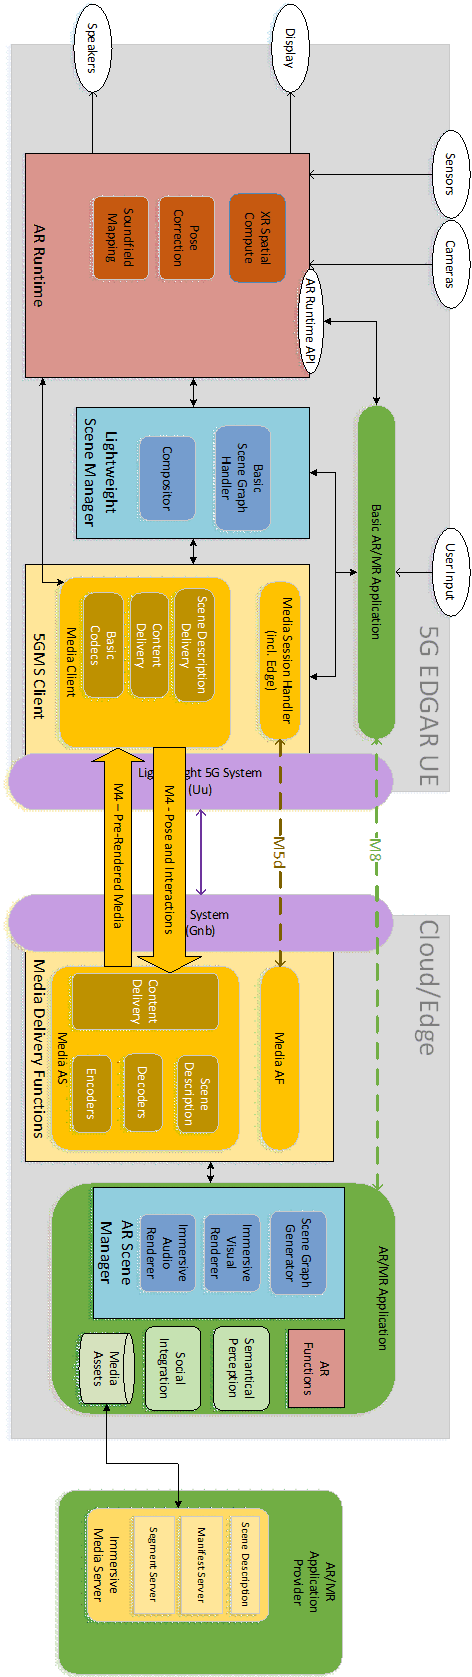 Copy of original 3GPP image for 3GPP TS 26.998, Fig. 6.2.3.2-1: EDGAR-based 5GMS Downlink Architecture